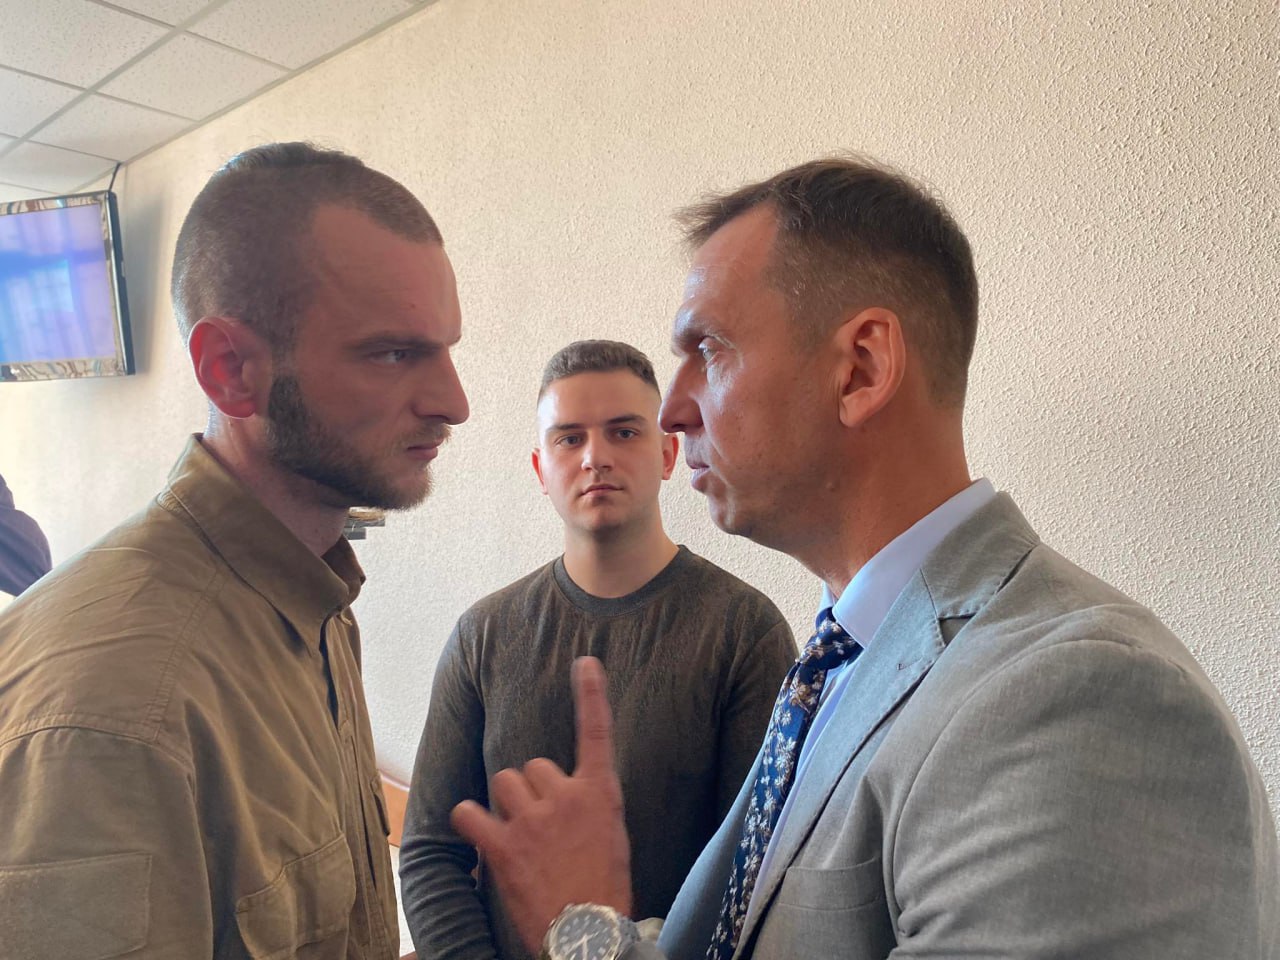 Син загиблого майданівця Юрій Аксенин (ліворуч) та адвокат Стефан Решко (праворуч) в залі суду